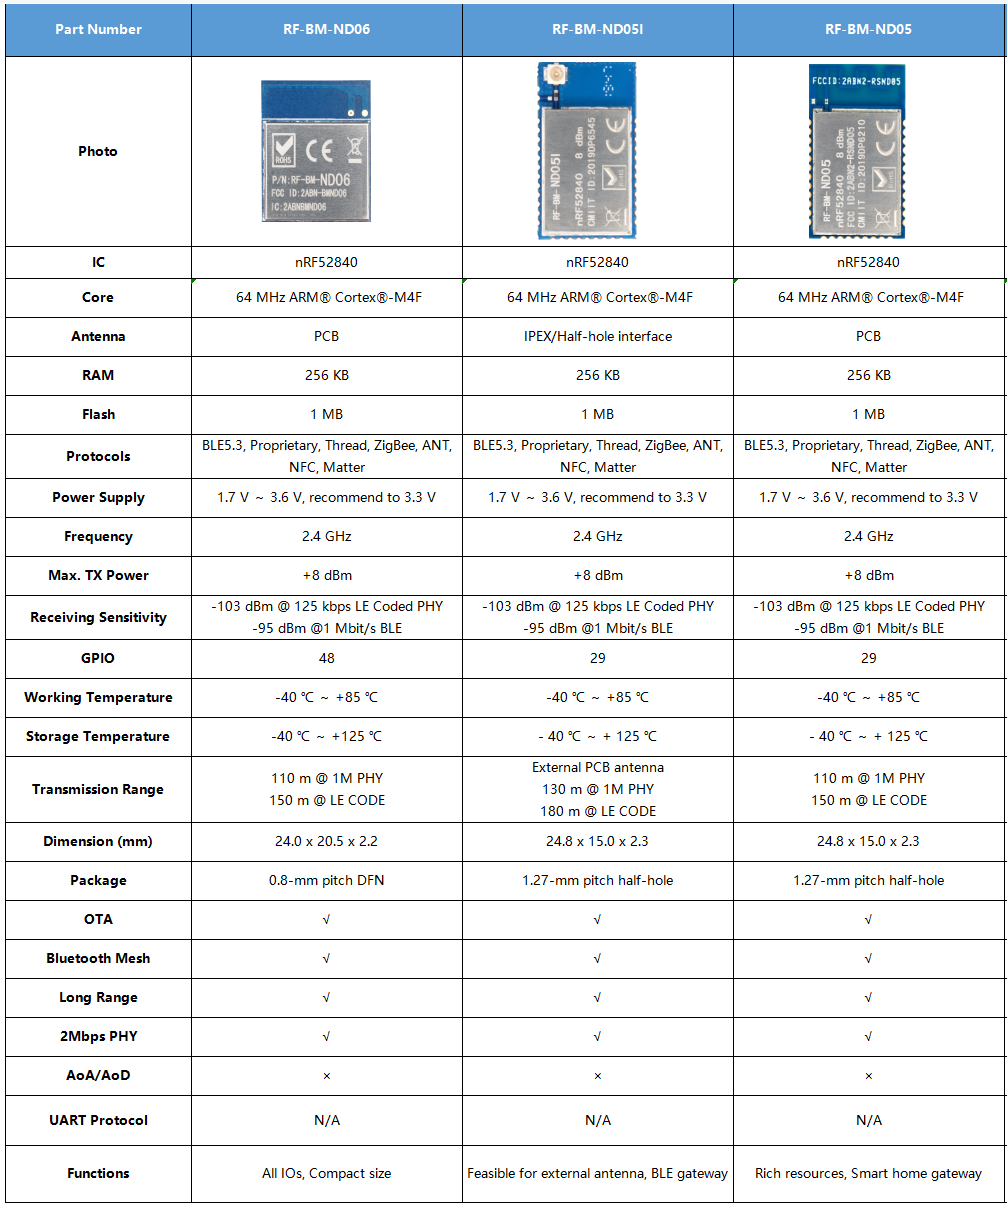 Le tableau des différents paramètres parmi RF-BM-ND05, RF-BM-ND05I, RF-BM-ND06